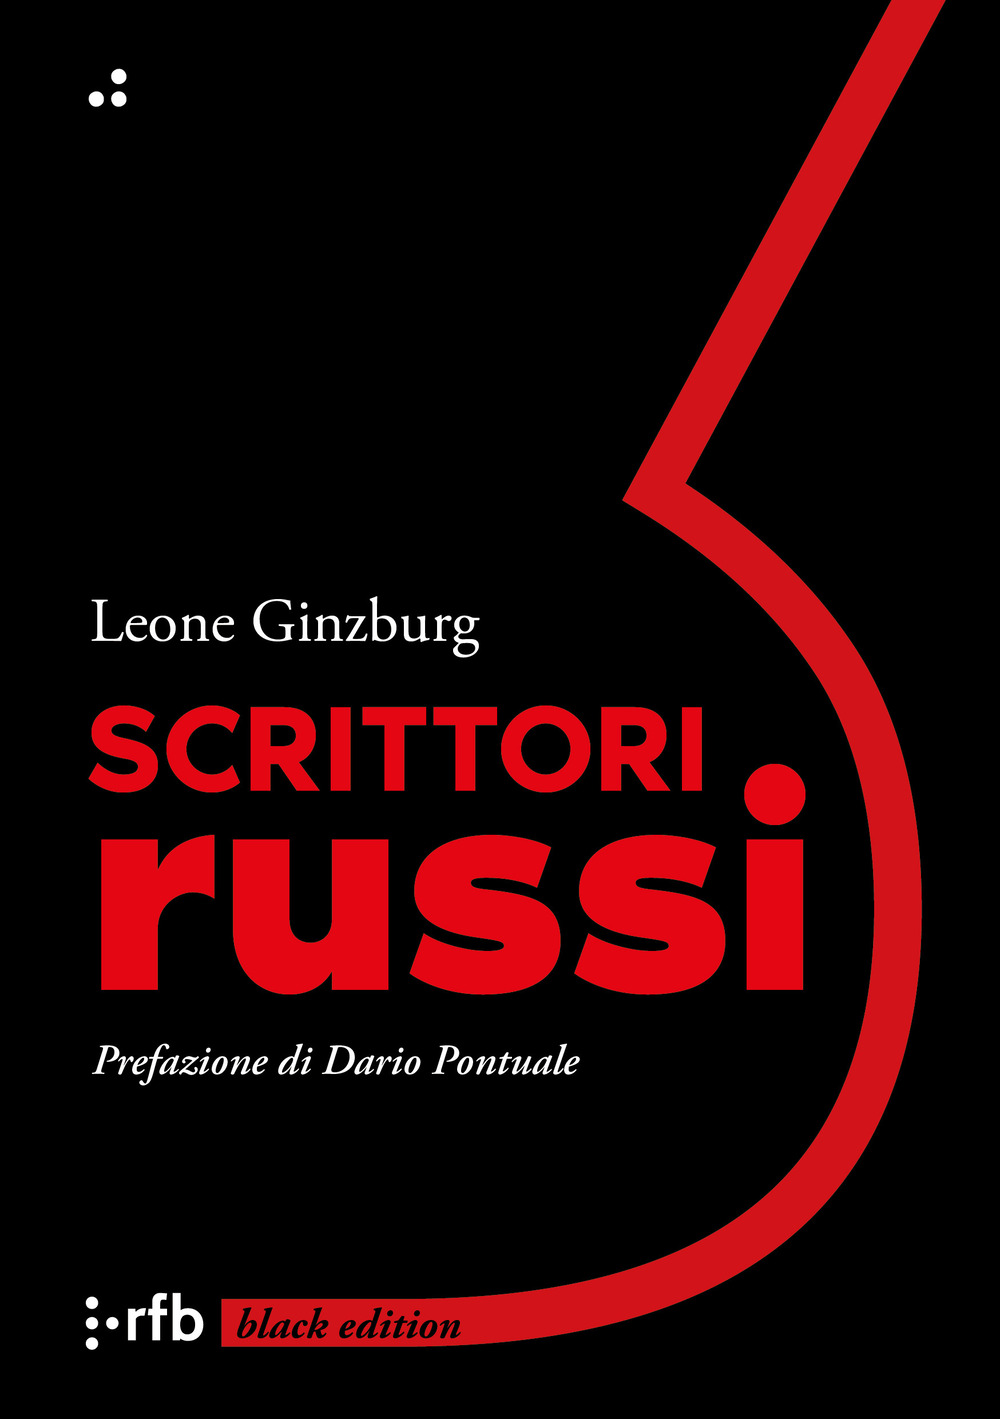 Libri Leone Ginzburg - Scrittori Russi NUOVO SIGILLATO, EDIZIONE DEL 20/05/2022 SUBITO DISPONIBILE